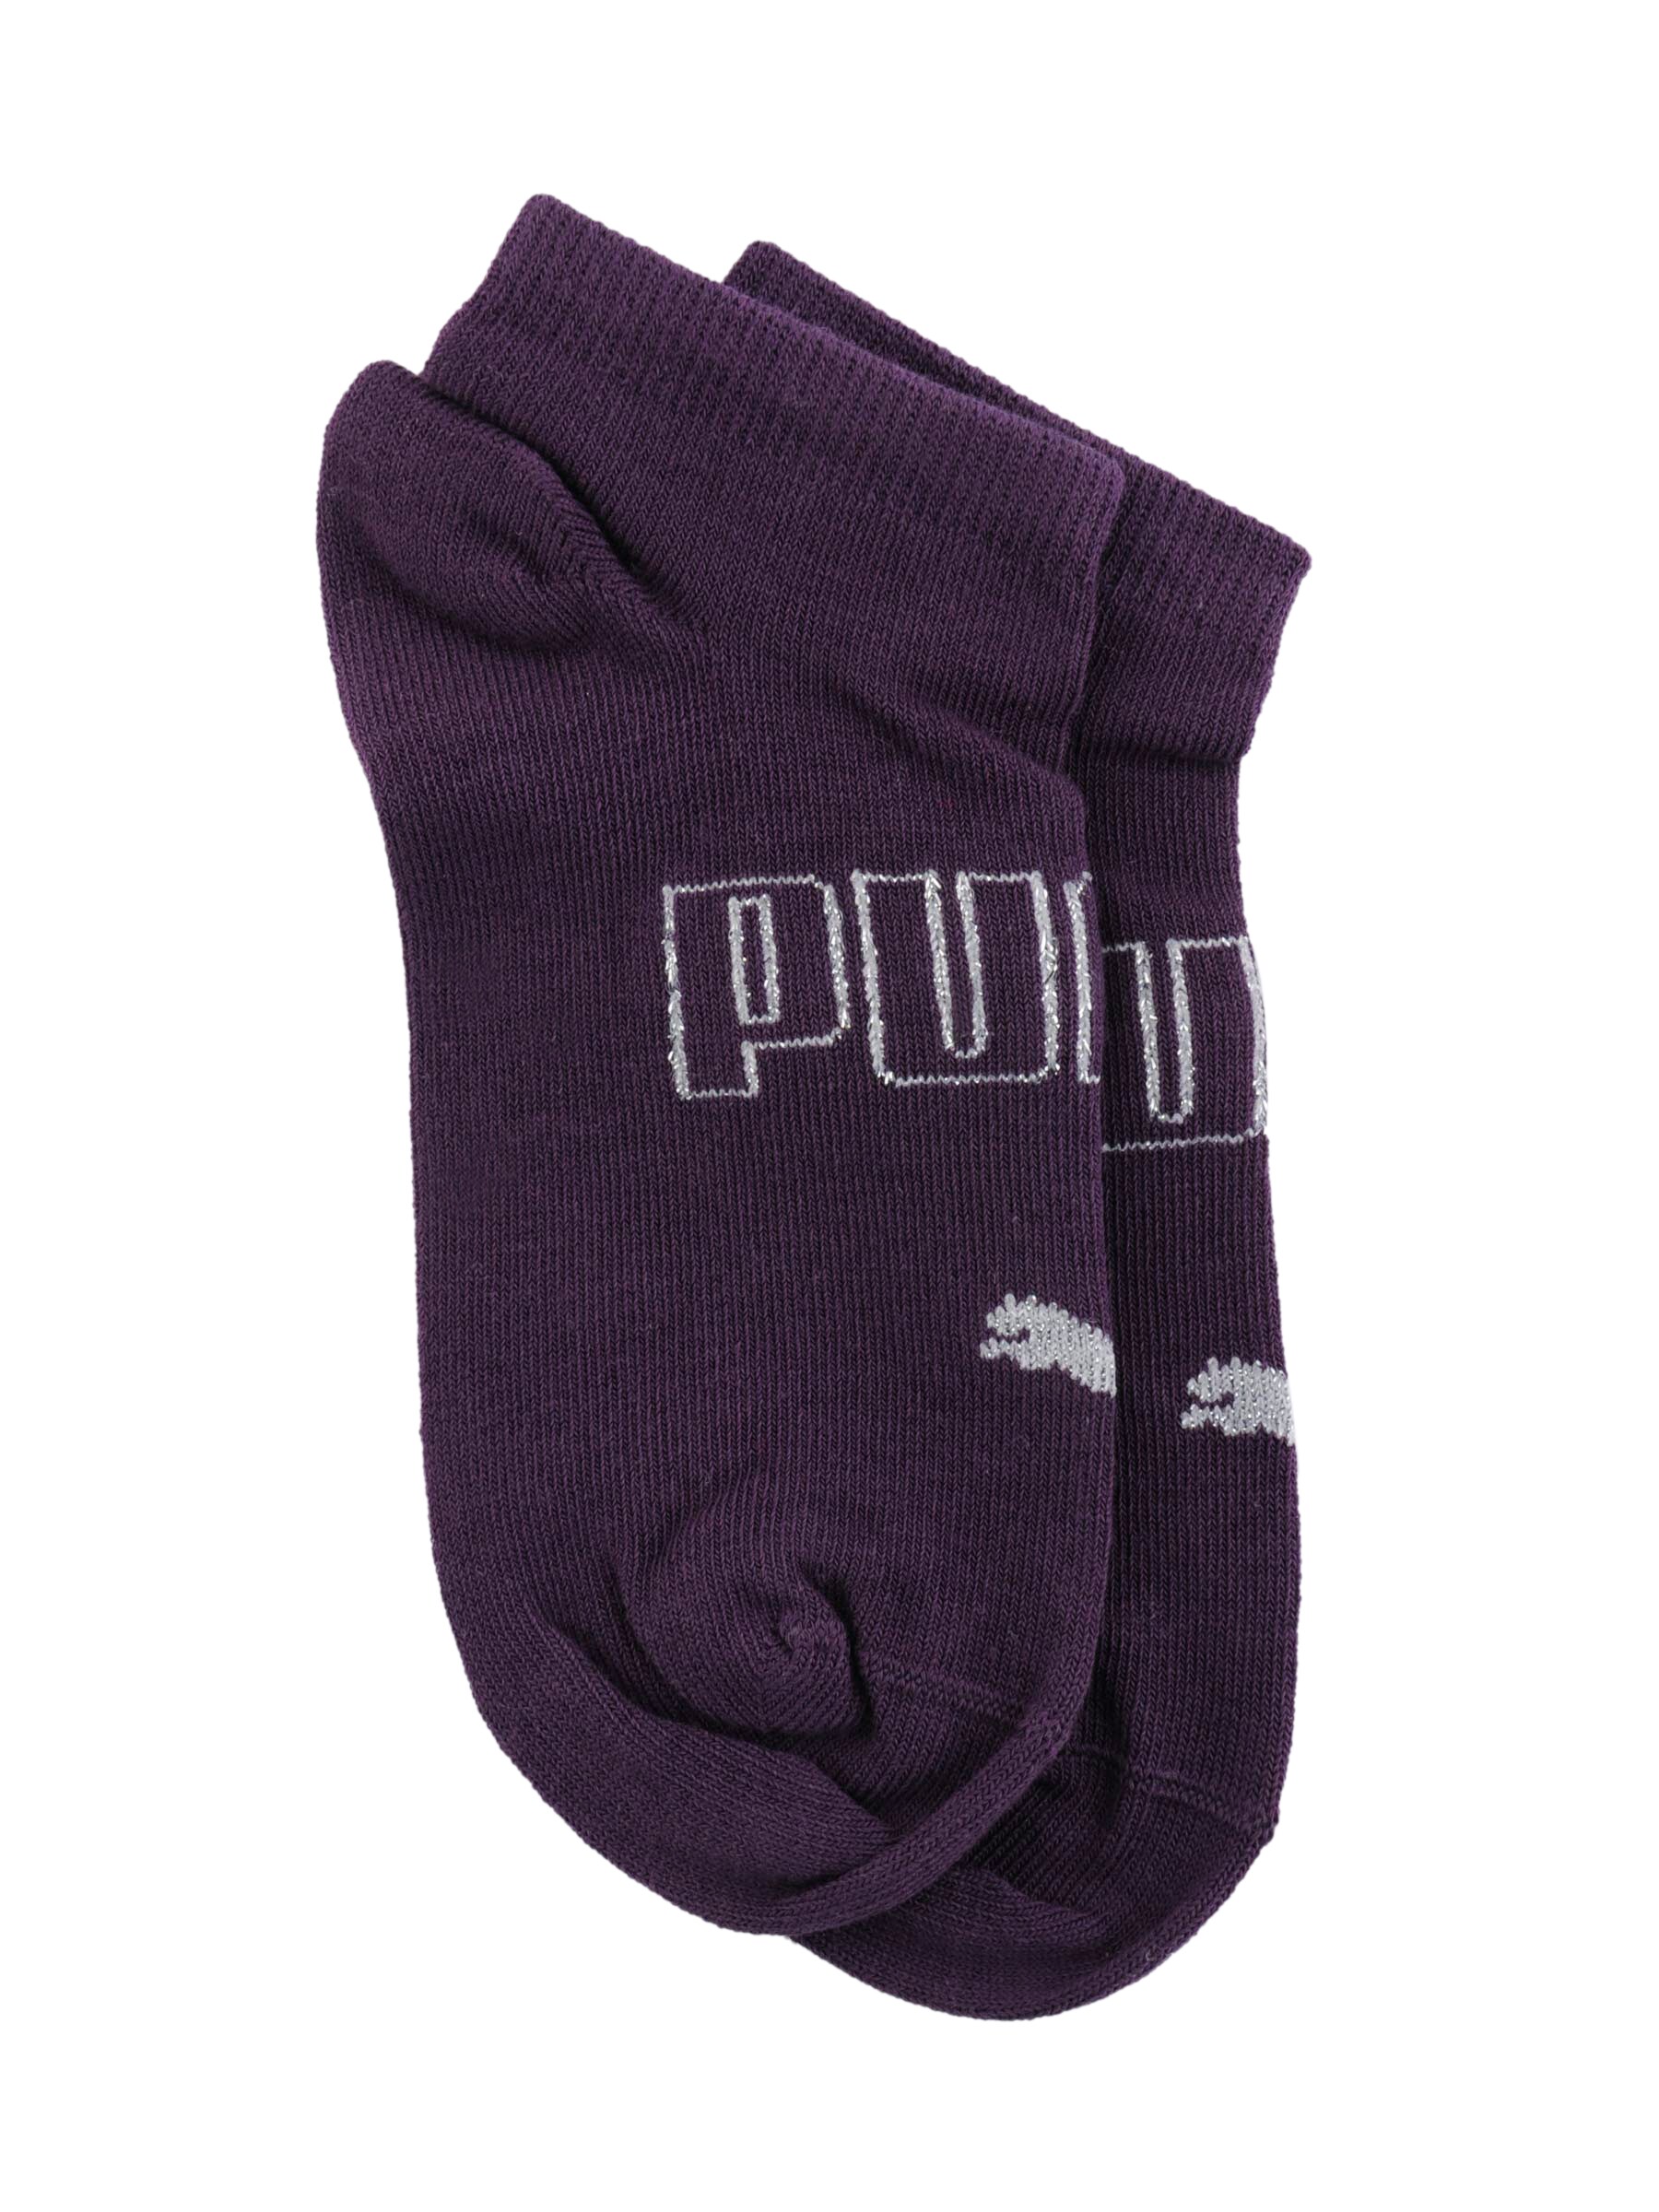 Puma Women Fitness Quarters Purple Socks